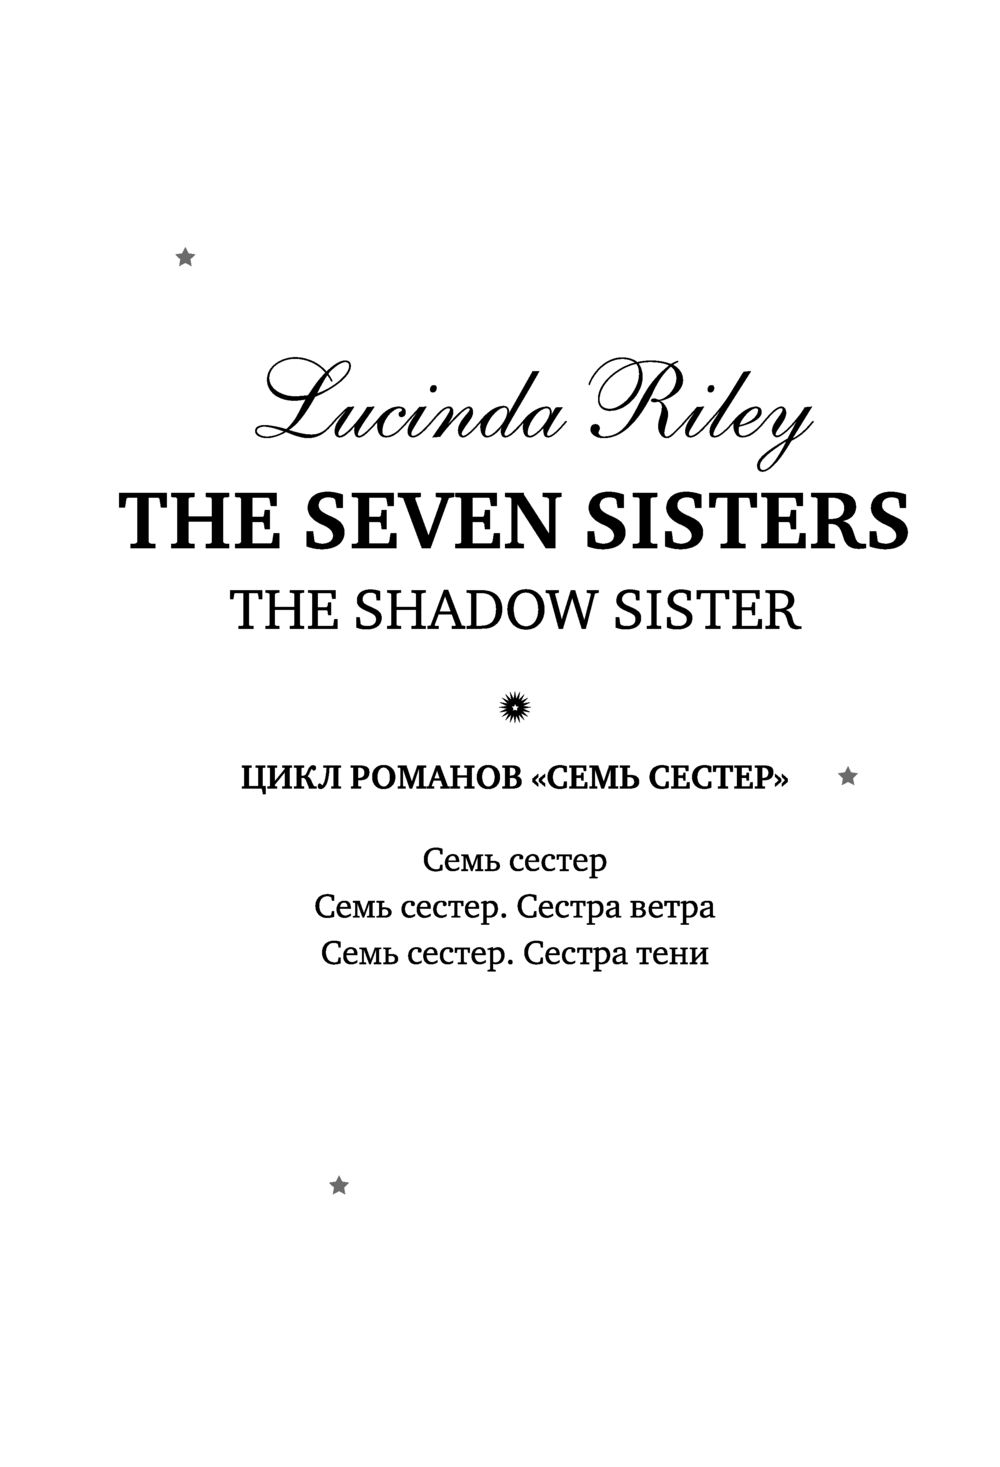 7 sisters book. Сестра тени Люсинда Райли. Семь сестер книга. Семь сестер. Сестра тени. Сестра Луны книга.